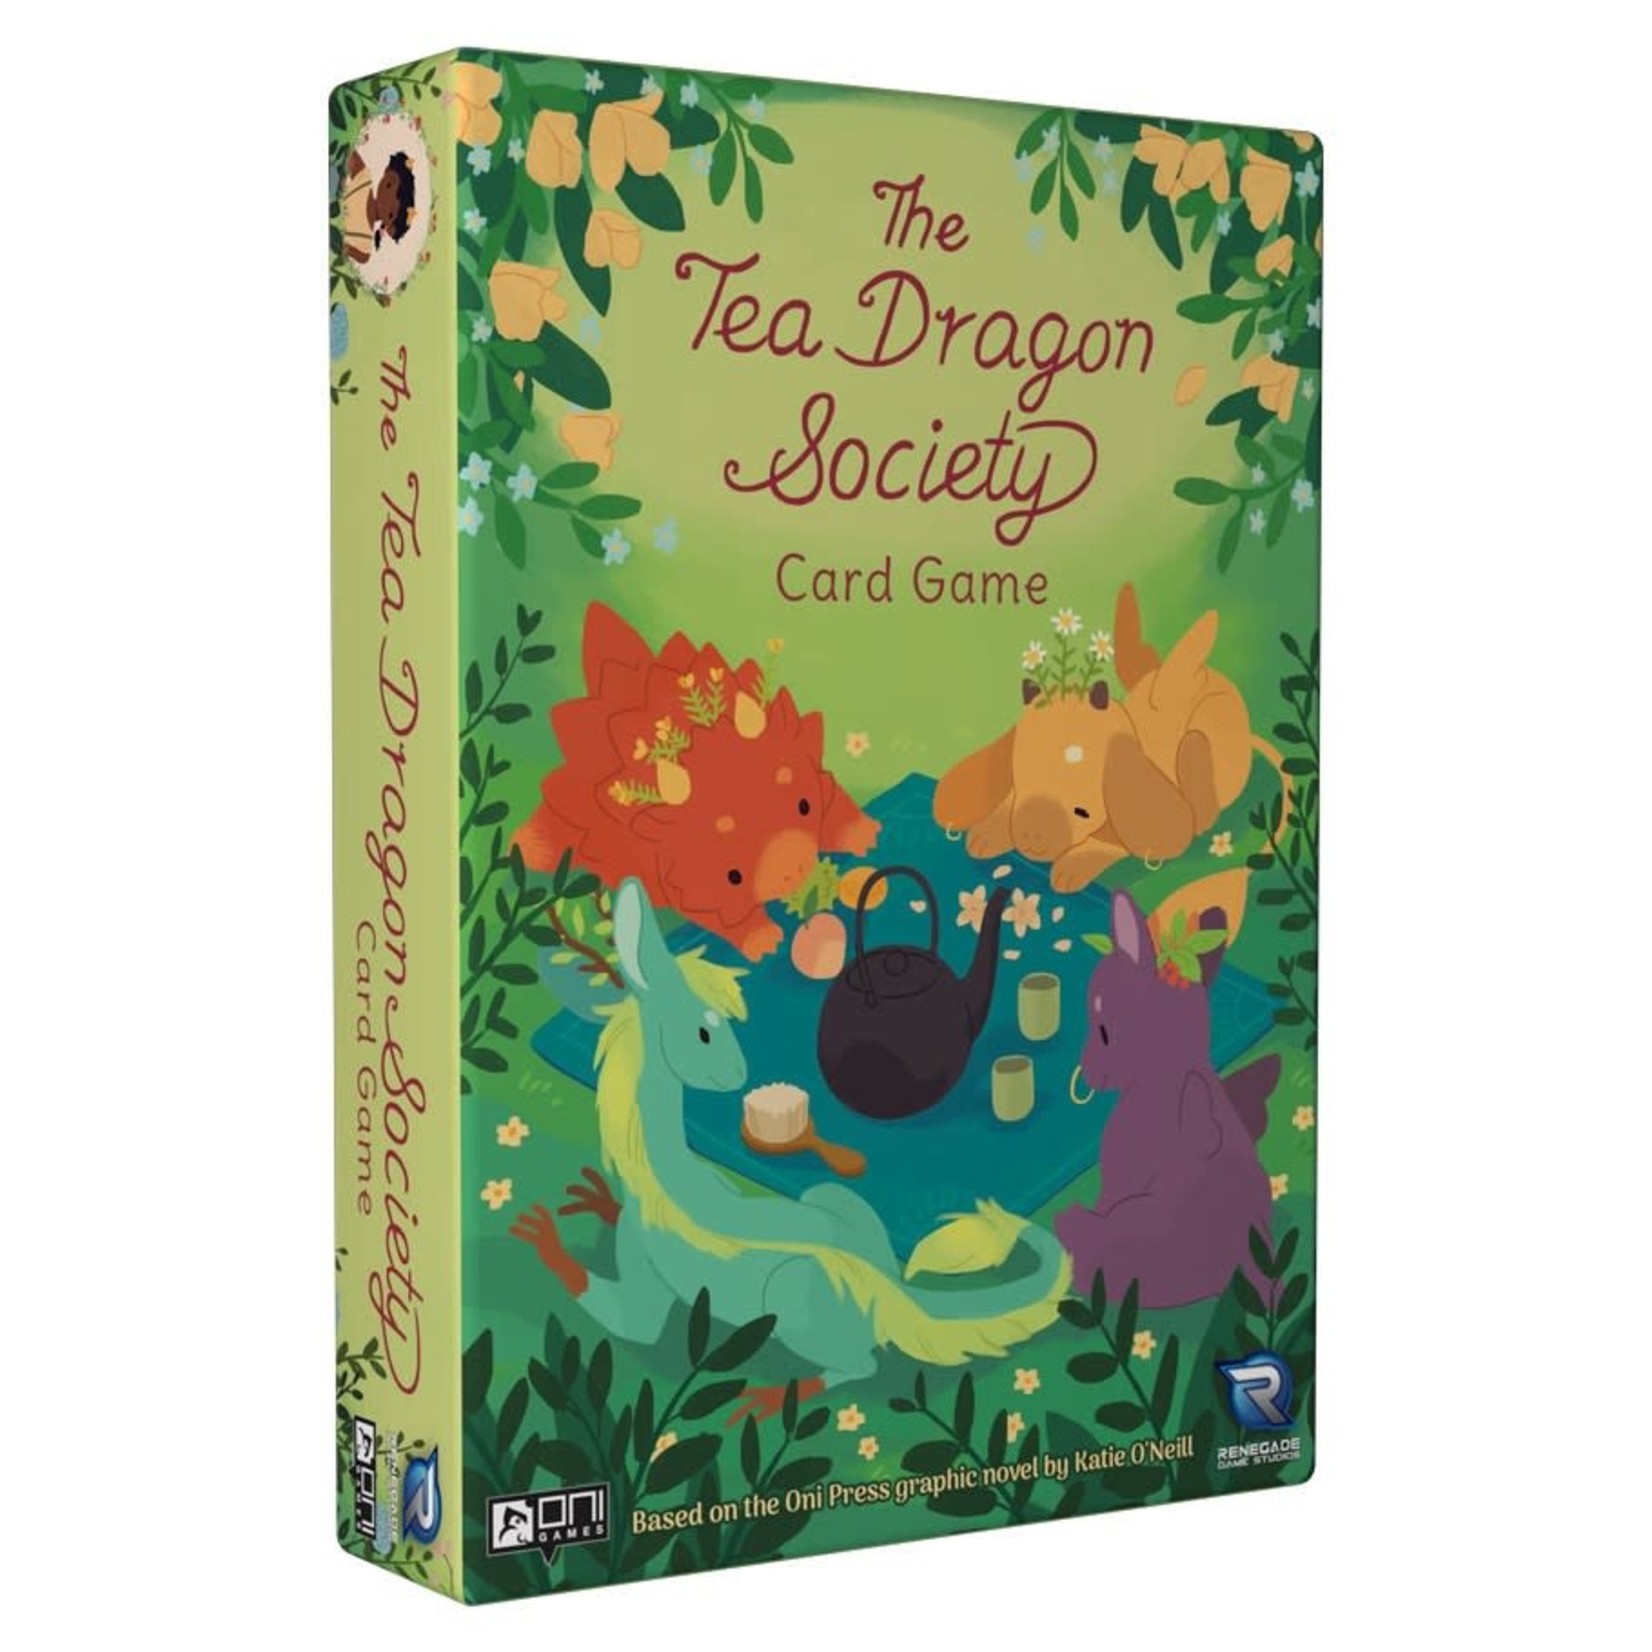 Renegade Game Studios The Tea Dragon Society Card Game